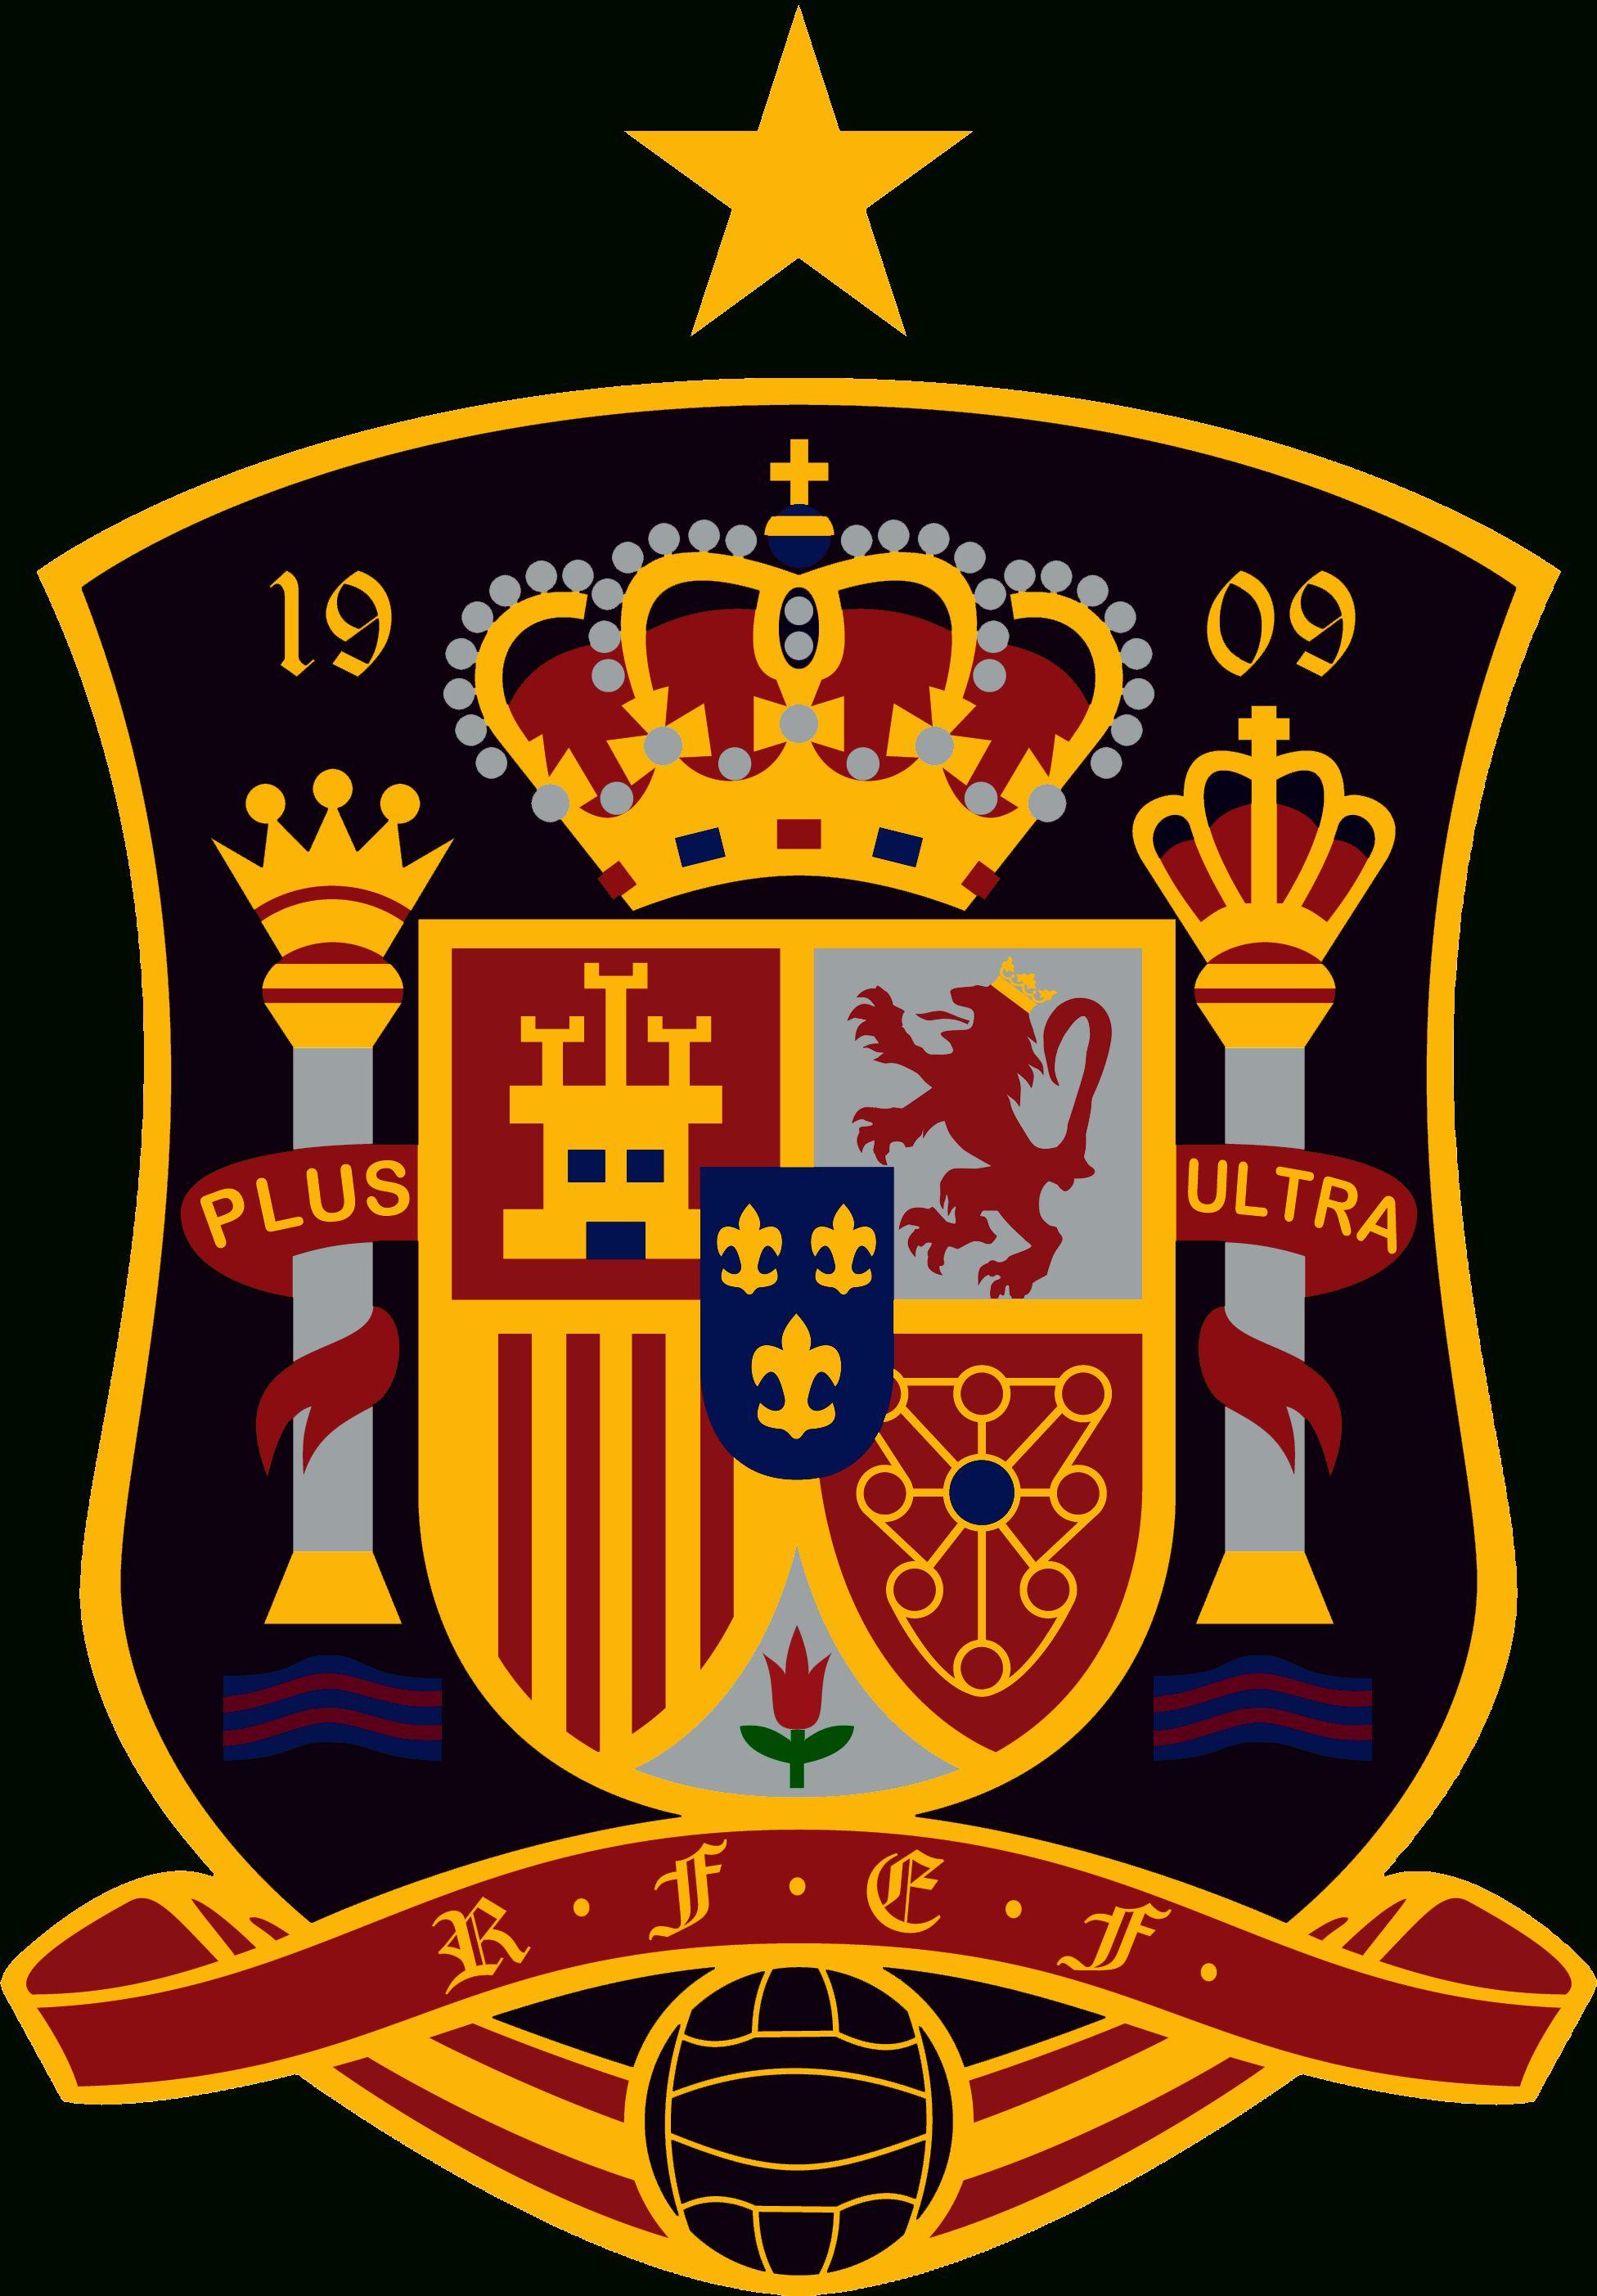 Hình nền Logo Tây Ban Nha: Tây Ban Nha vốn nổi tiếng với bóng đá, và logo của các đội bóng Tây Ban Nha luôn mang đến một sức hút riêng. Nếu bạn là fan của bóng đá Tây Ban Nha, hãy cùng thưởng thức những hình nền logo đầy đẳng cấp và tinh tế này.